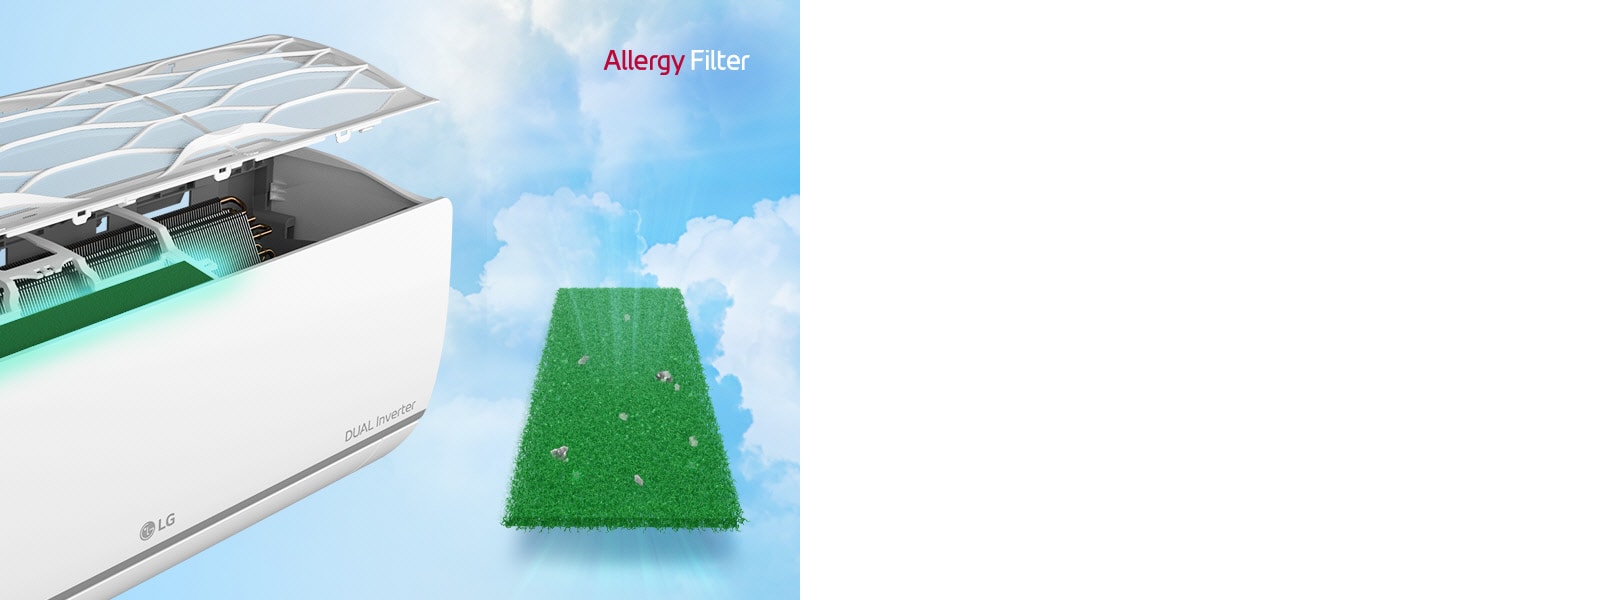 Unghiul lateral al aparatului de aer condiționat este afișat cu filtrele detașate pentru a pune în evidență filtrul anti-alergeni instalat în interior. Lângă aparat se află întregul filtru anti-alergeni verde cu acarieni de praf capturați. Logo-ul filtrului anti-alergeni apare în colțul din dreapta sus.